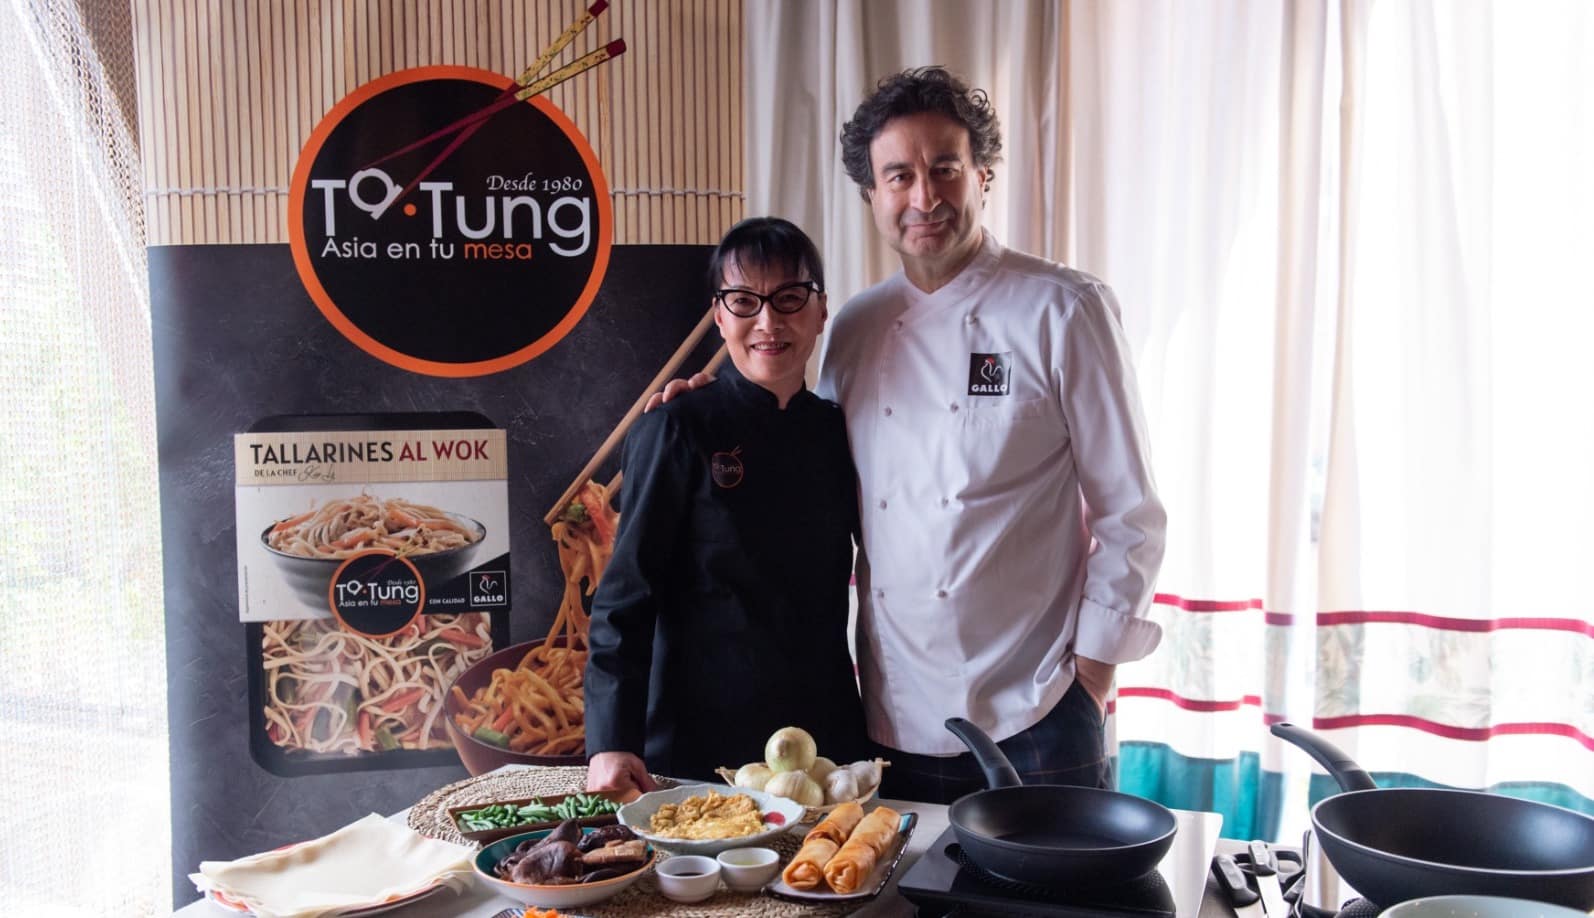 Grupo Gallo presenta Ta-Tung, su línea de productos orientales con recetas tradicionales de la gastronomía asiática